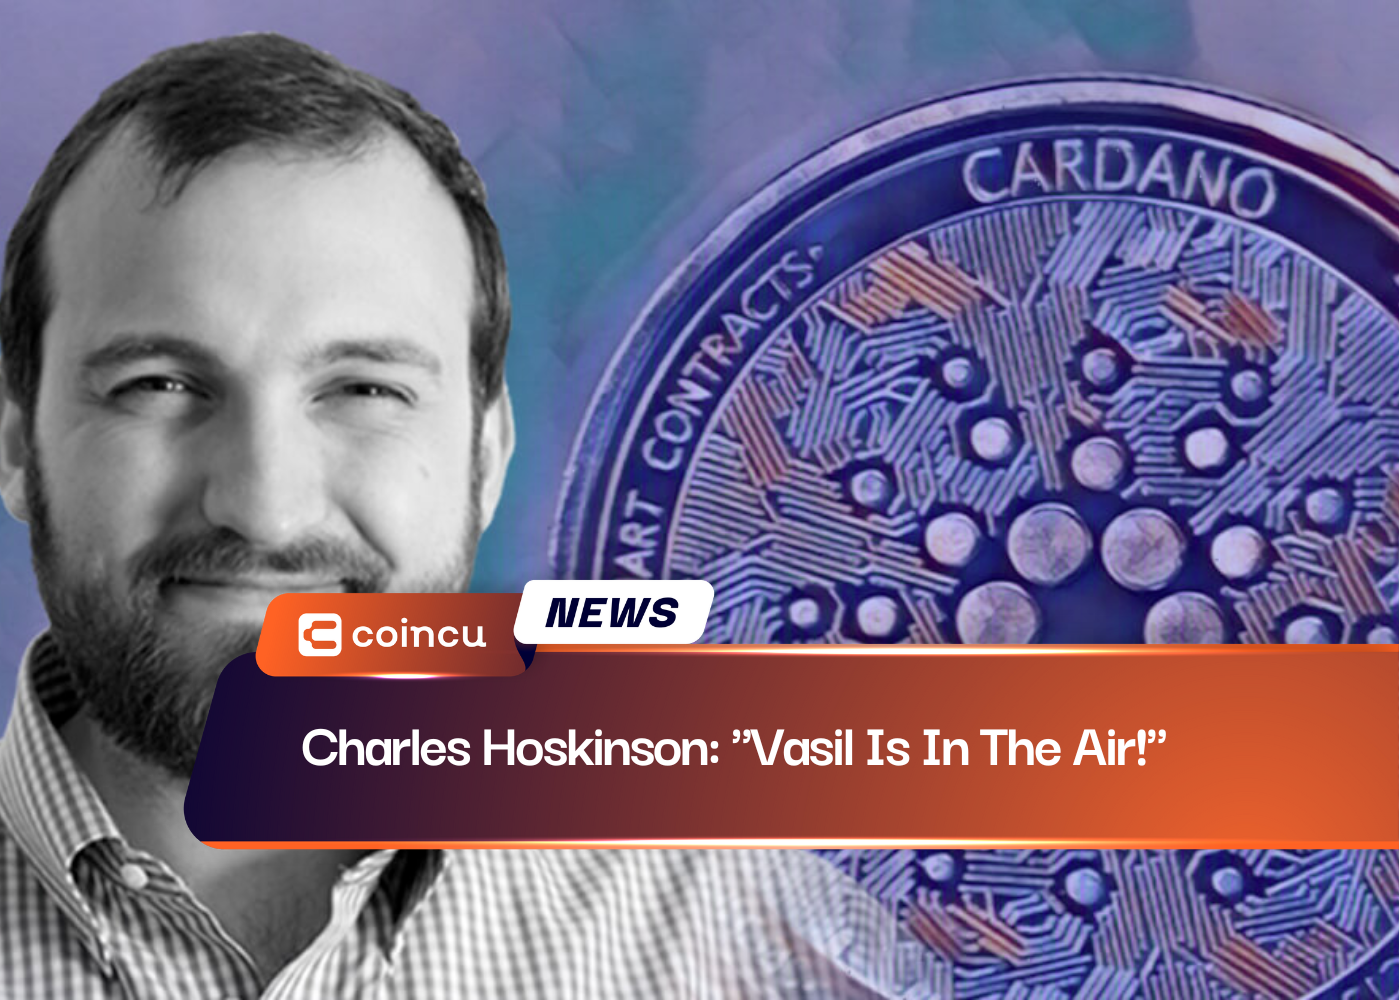 Charles Hoskinson: "Vasil Is In The Air!"